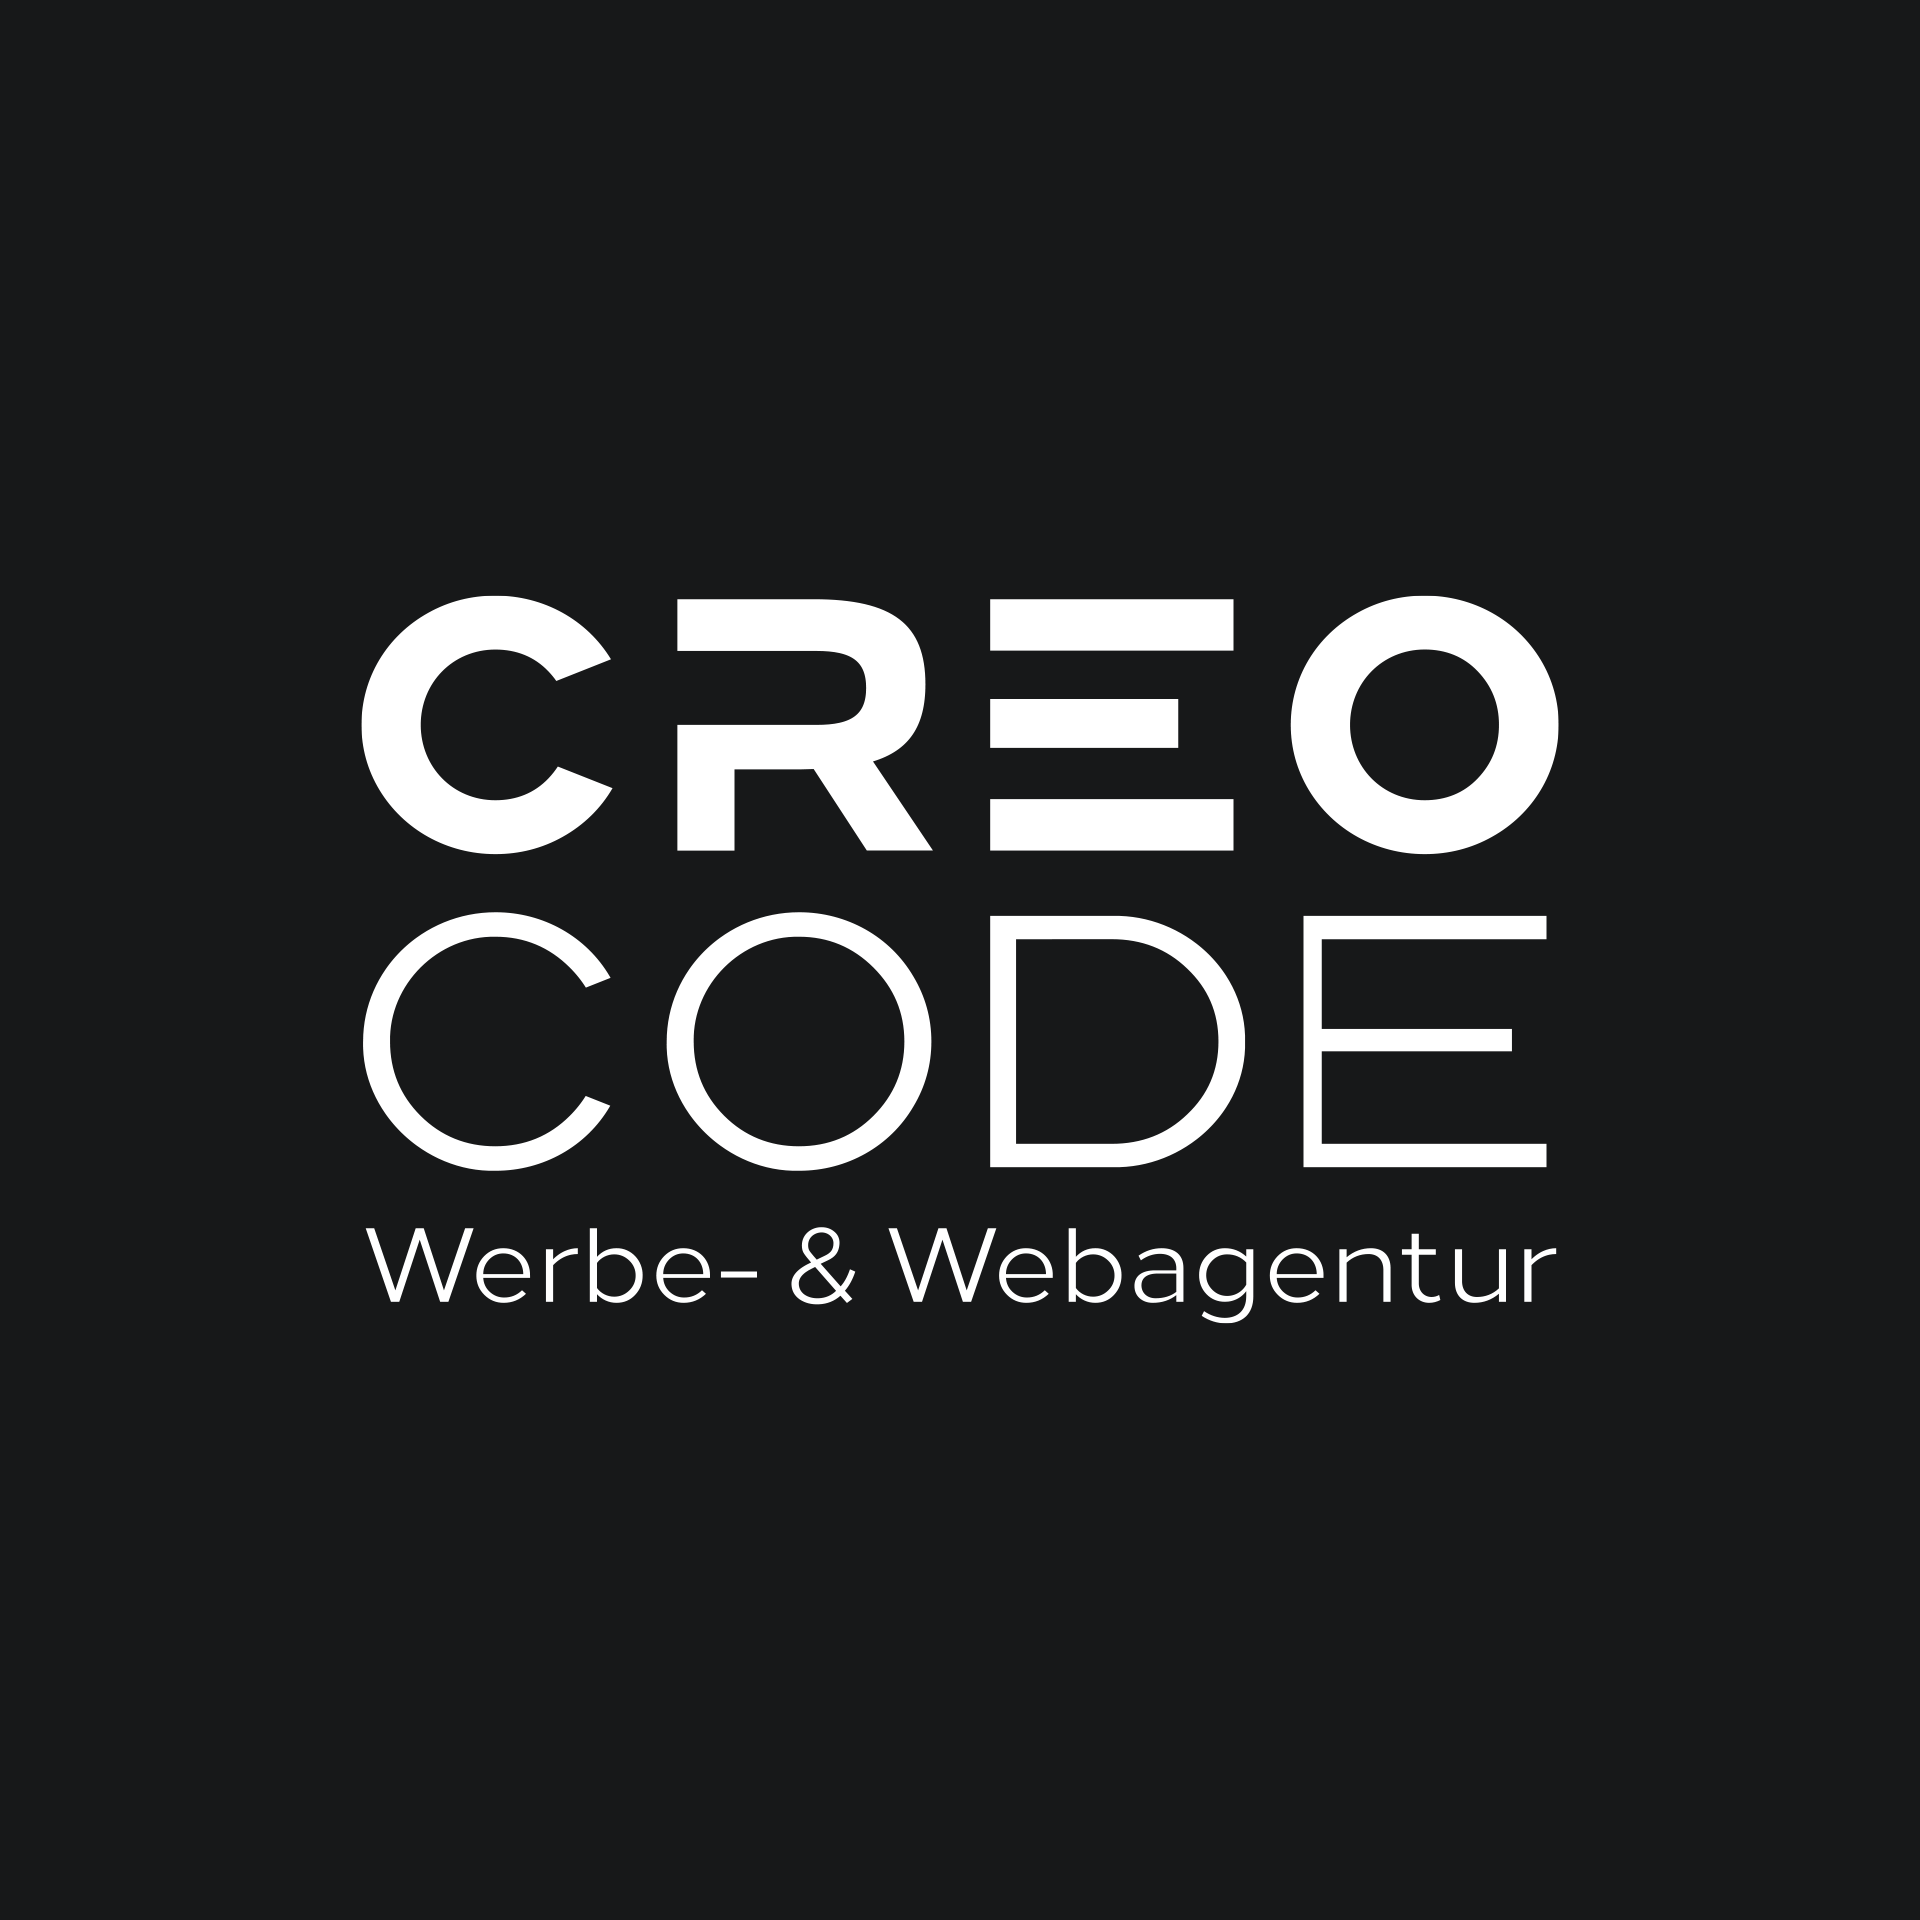 (c) Creo-code.at